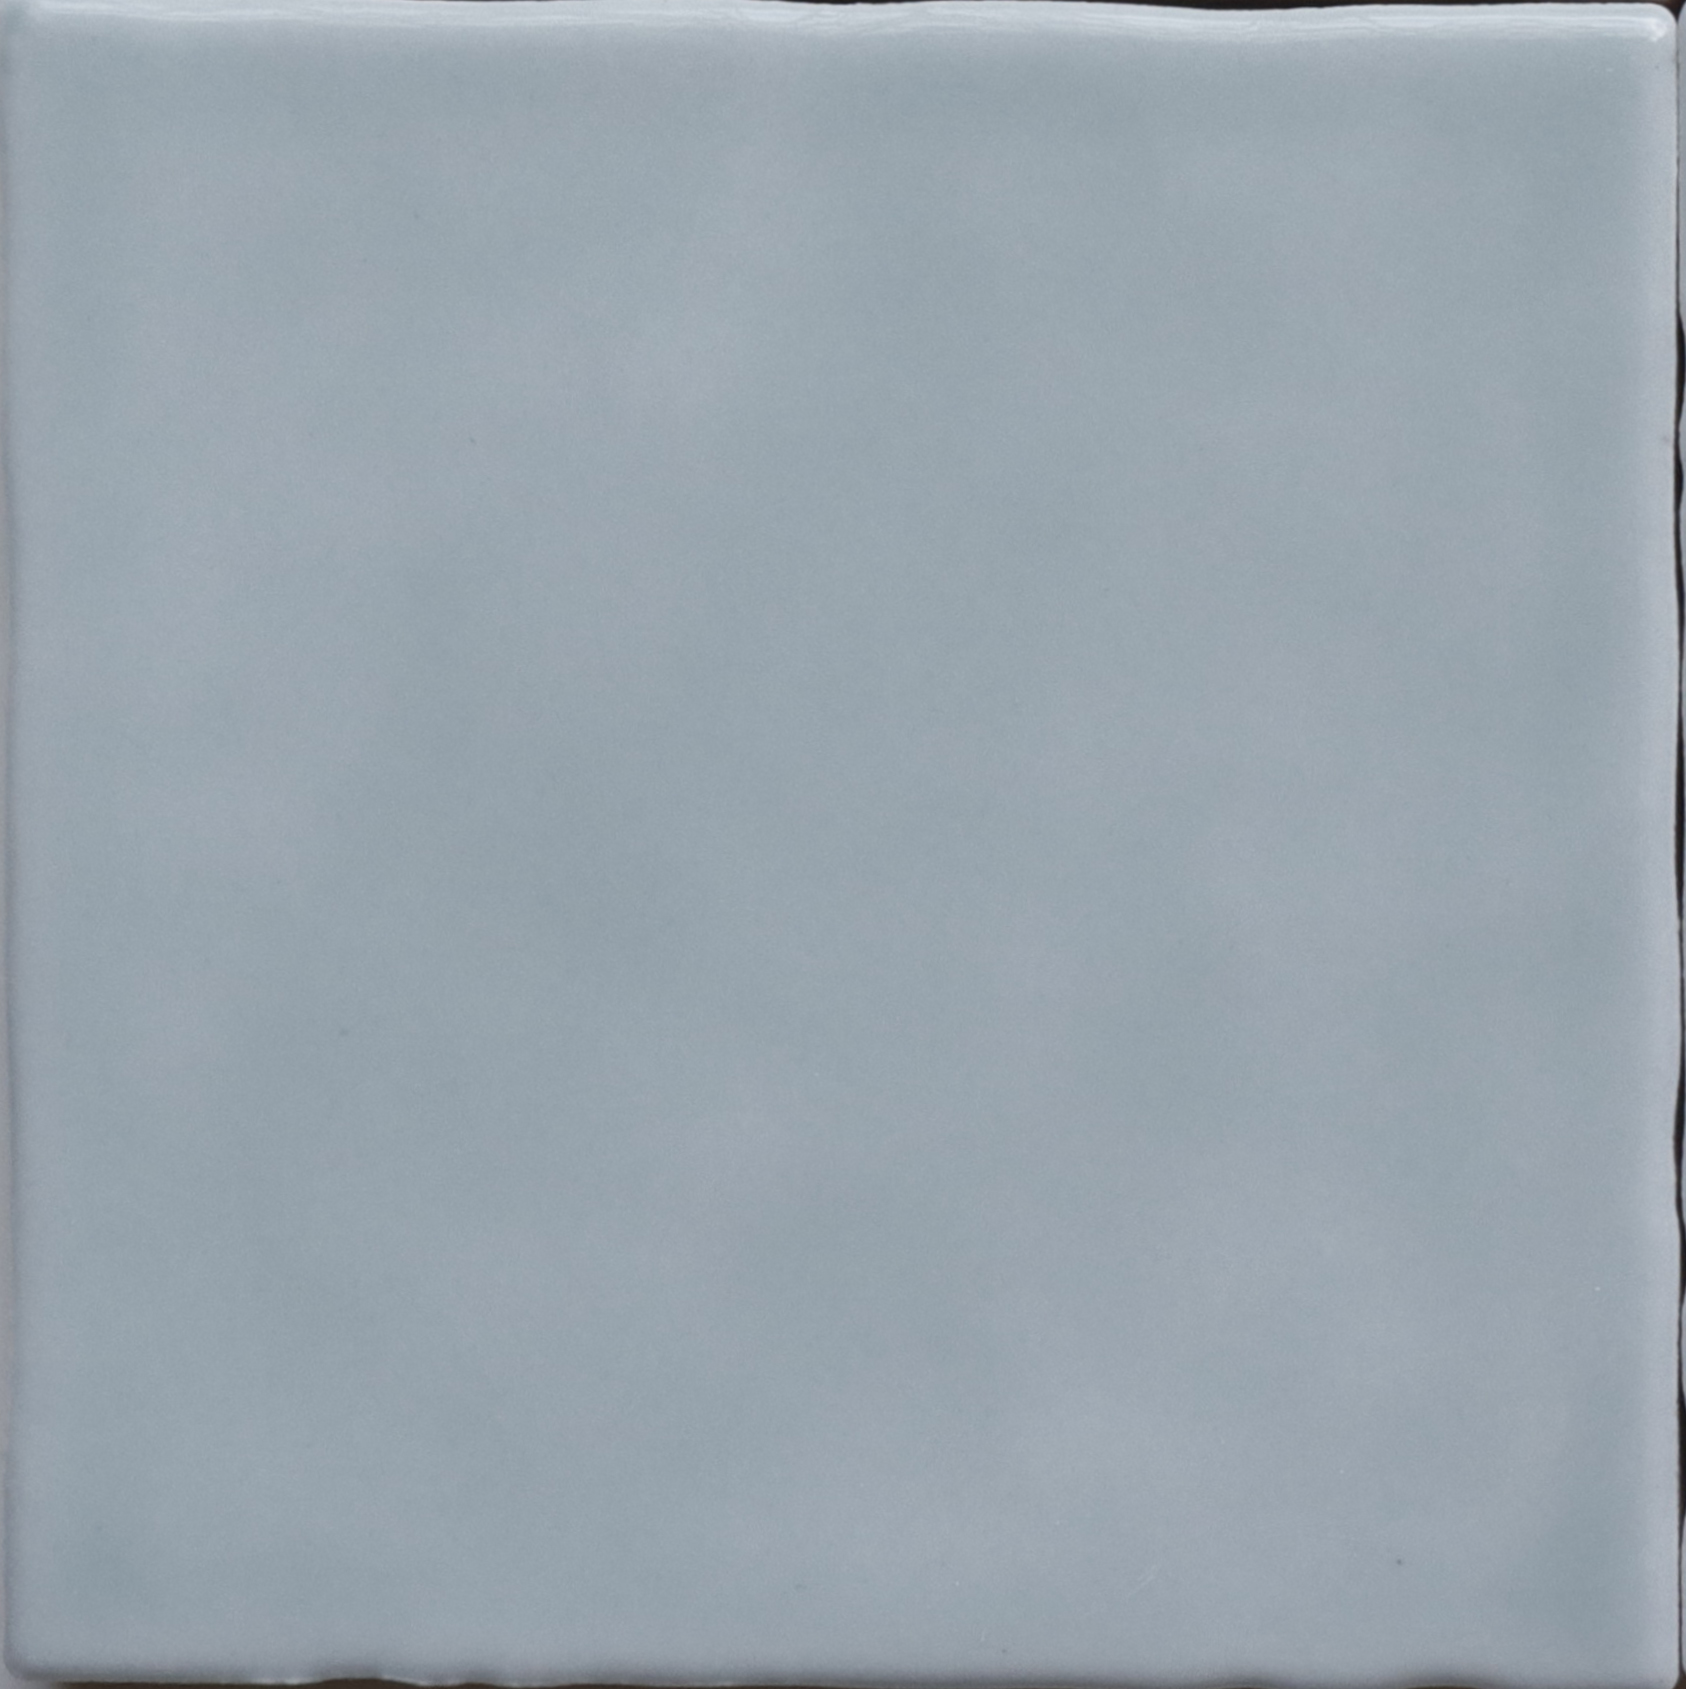 Azulejo de cocina con protector contra salpicaduras de superficie brillante con borde ondulado de 100x100 mm